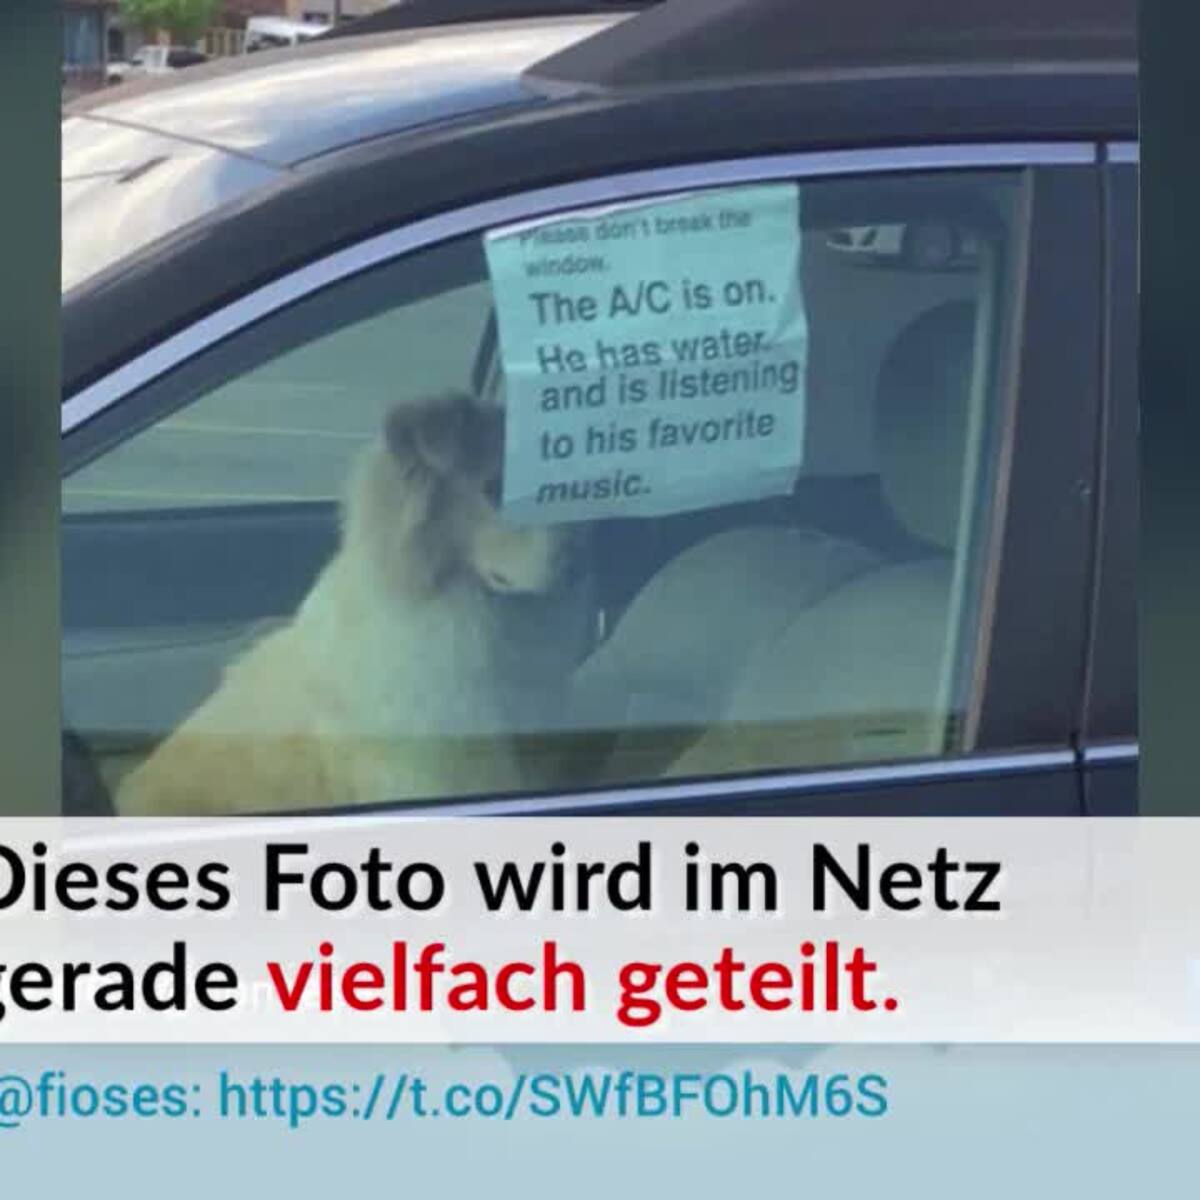 Hund bei Hitze im Auto: bis zu 7.500 Euro Strafe! – YOUR DOG Hundemagazin